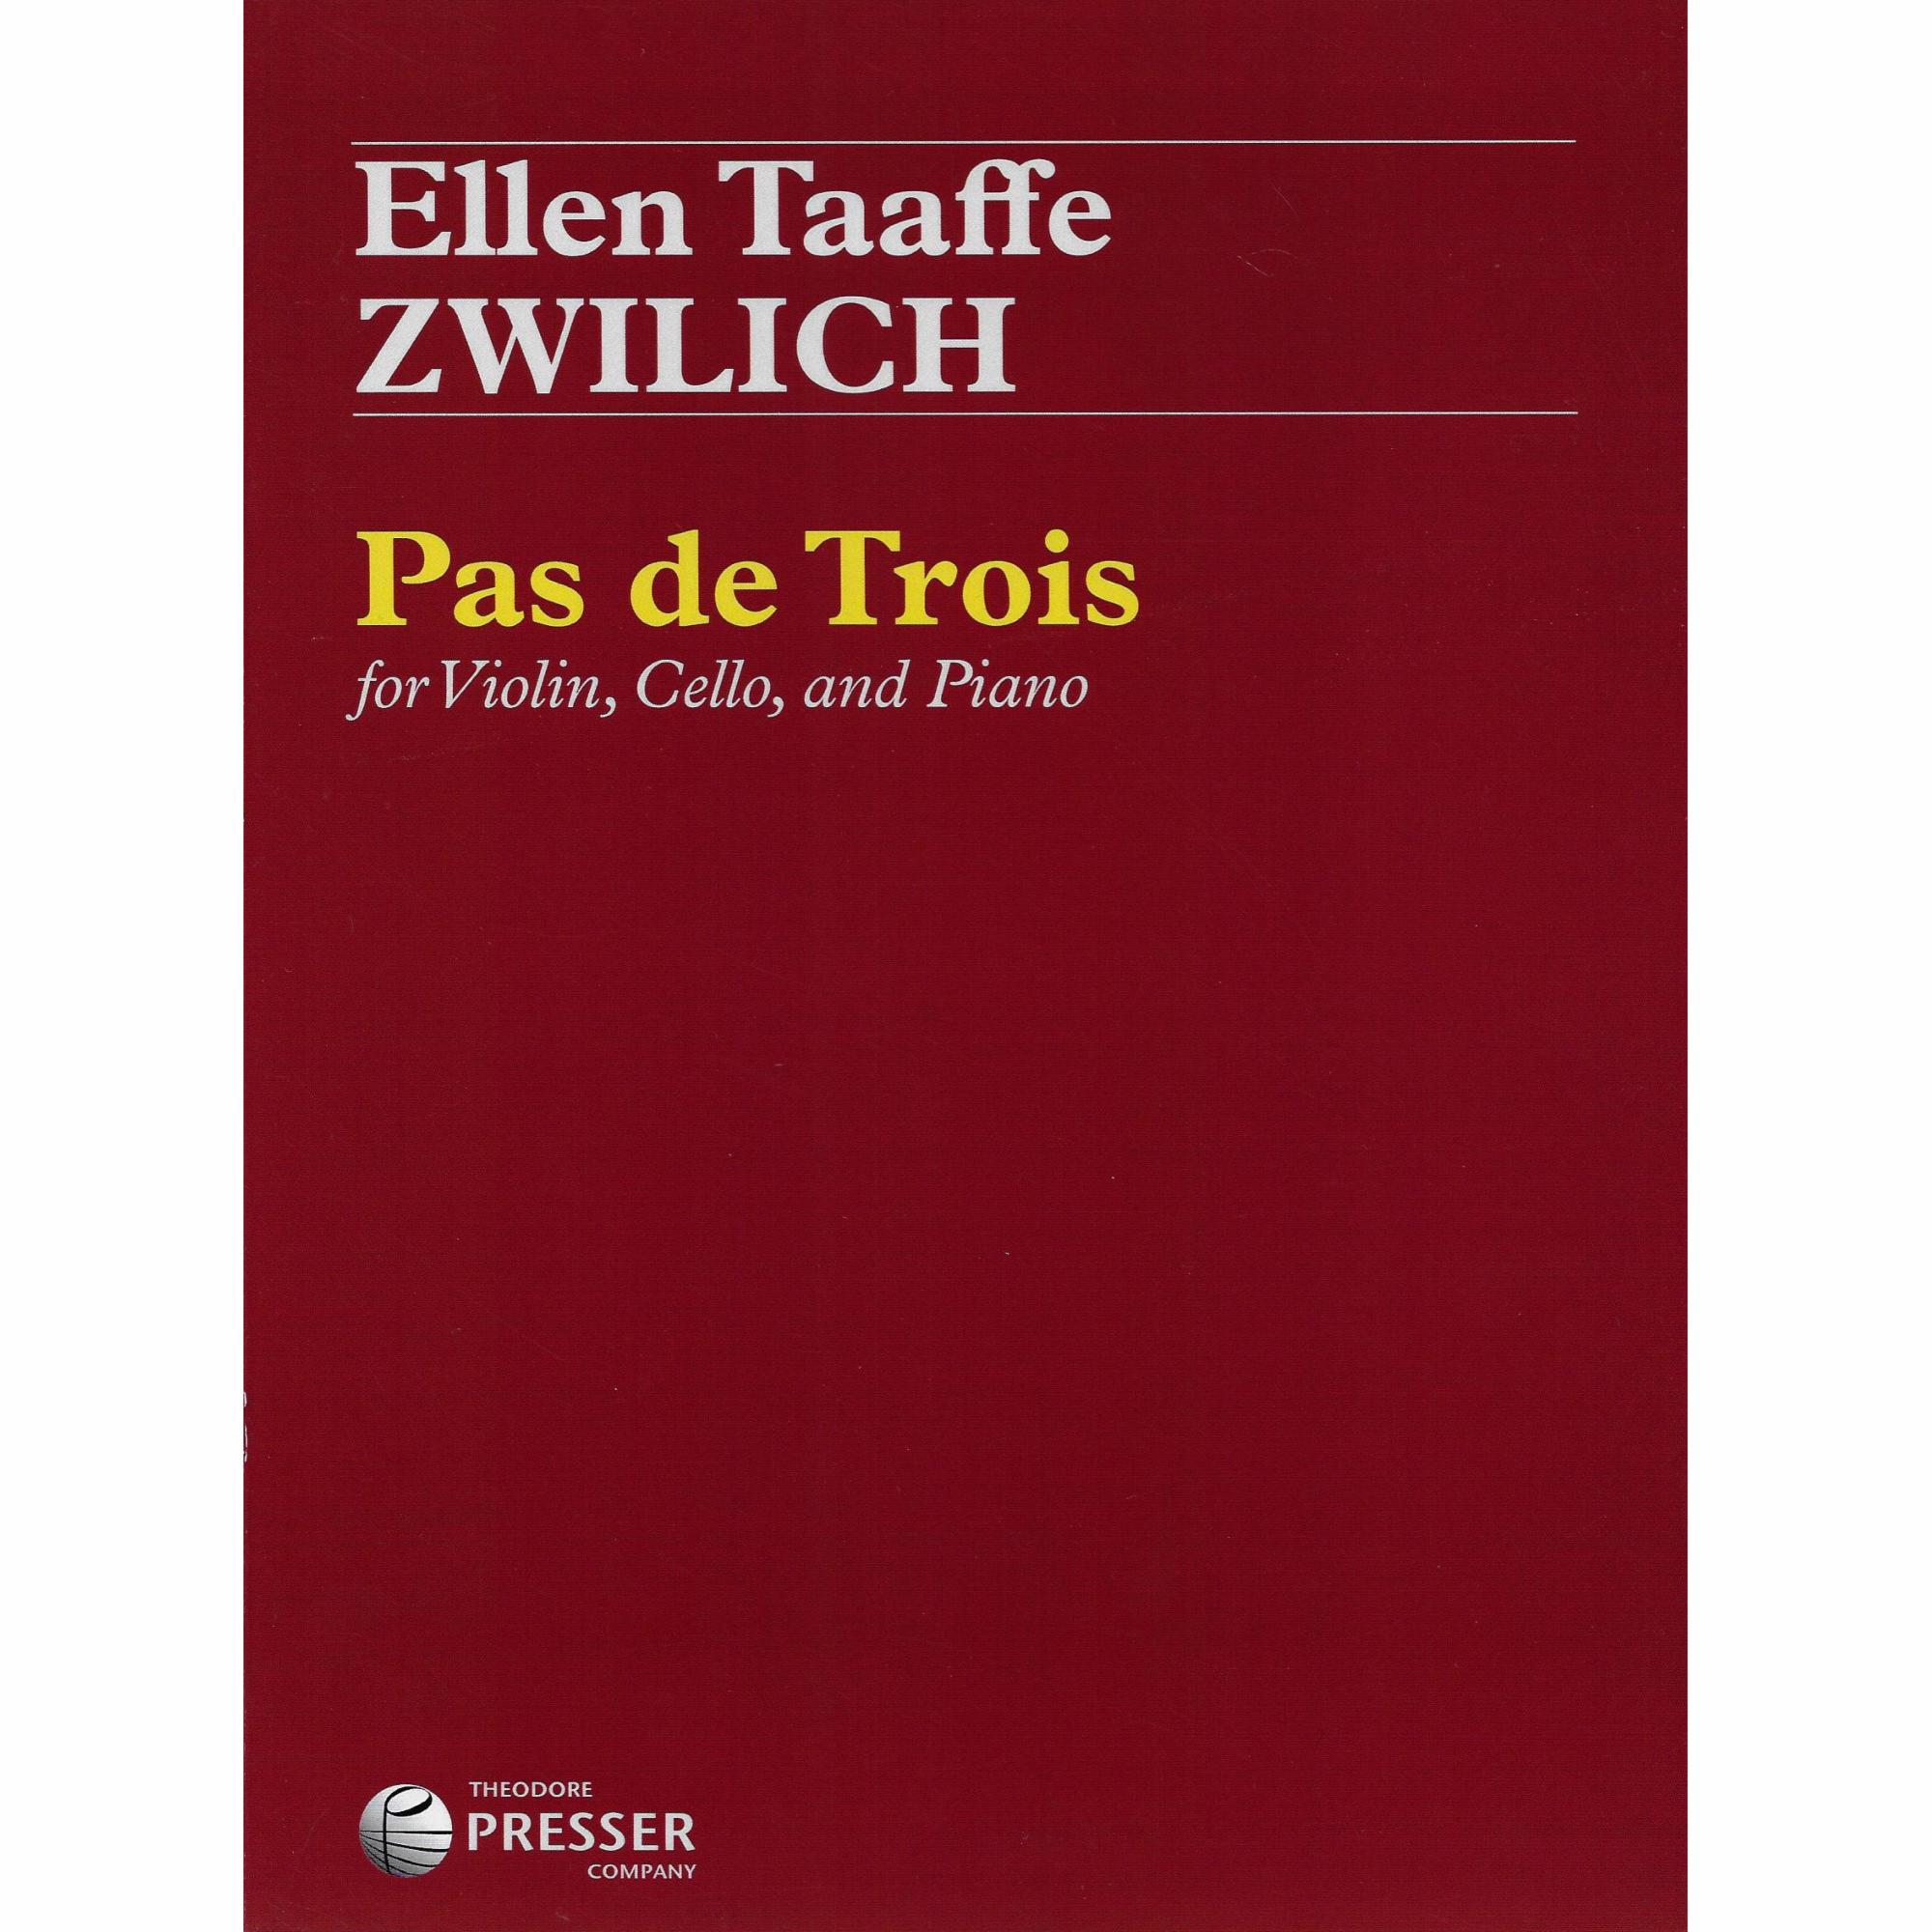 Zwilich -- Pas de Trois for Piano Trio